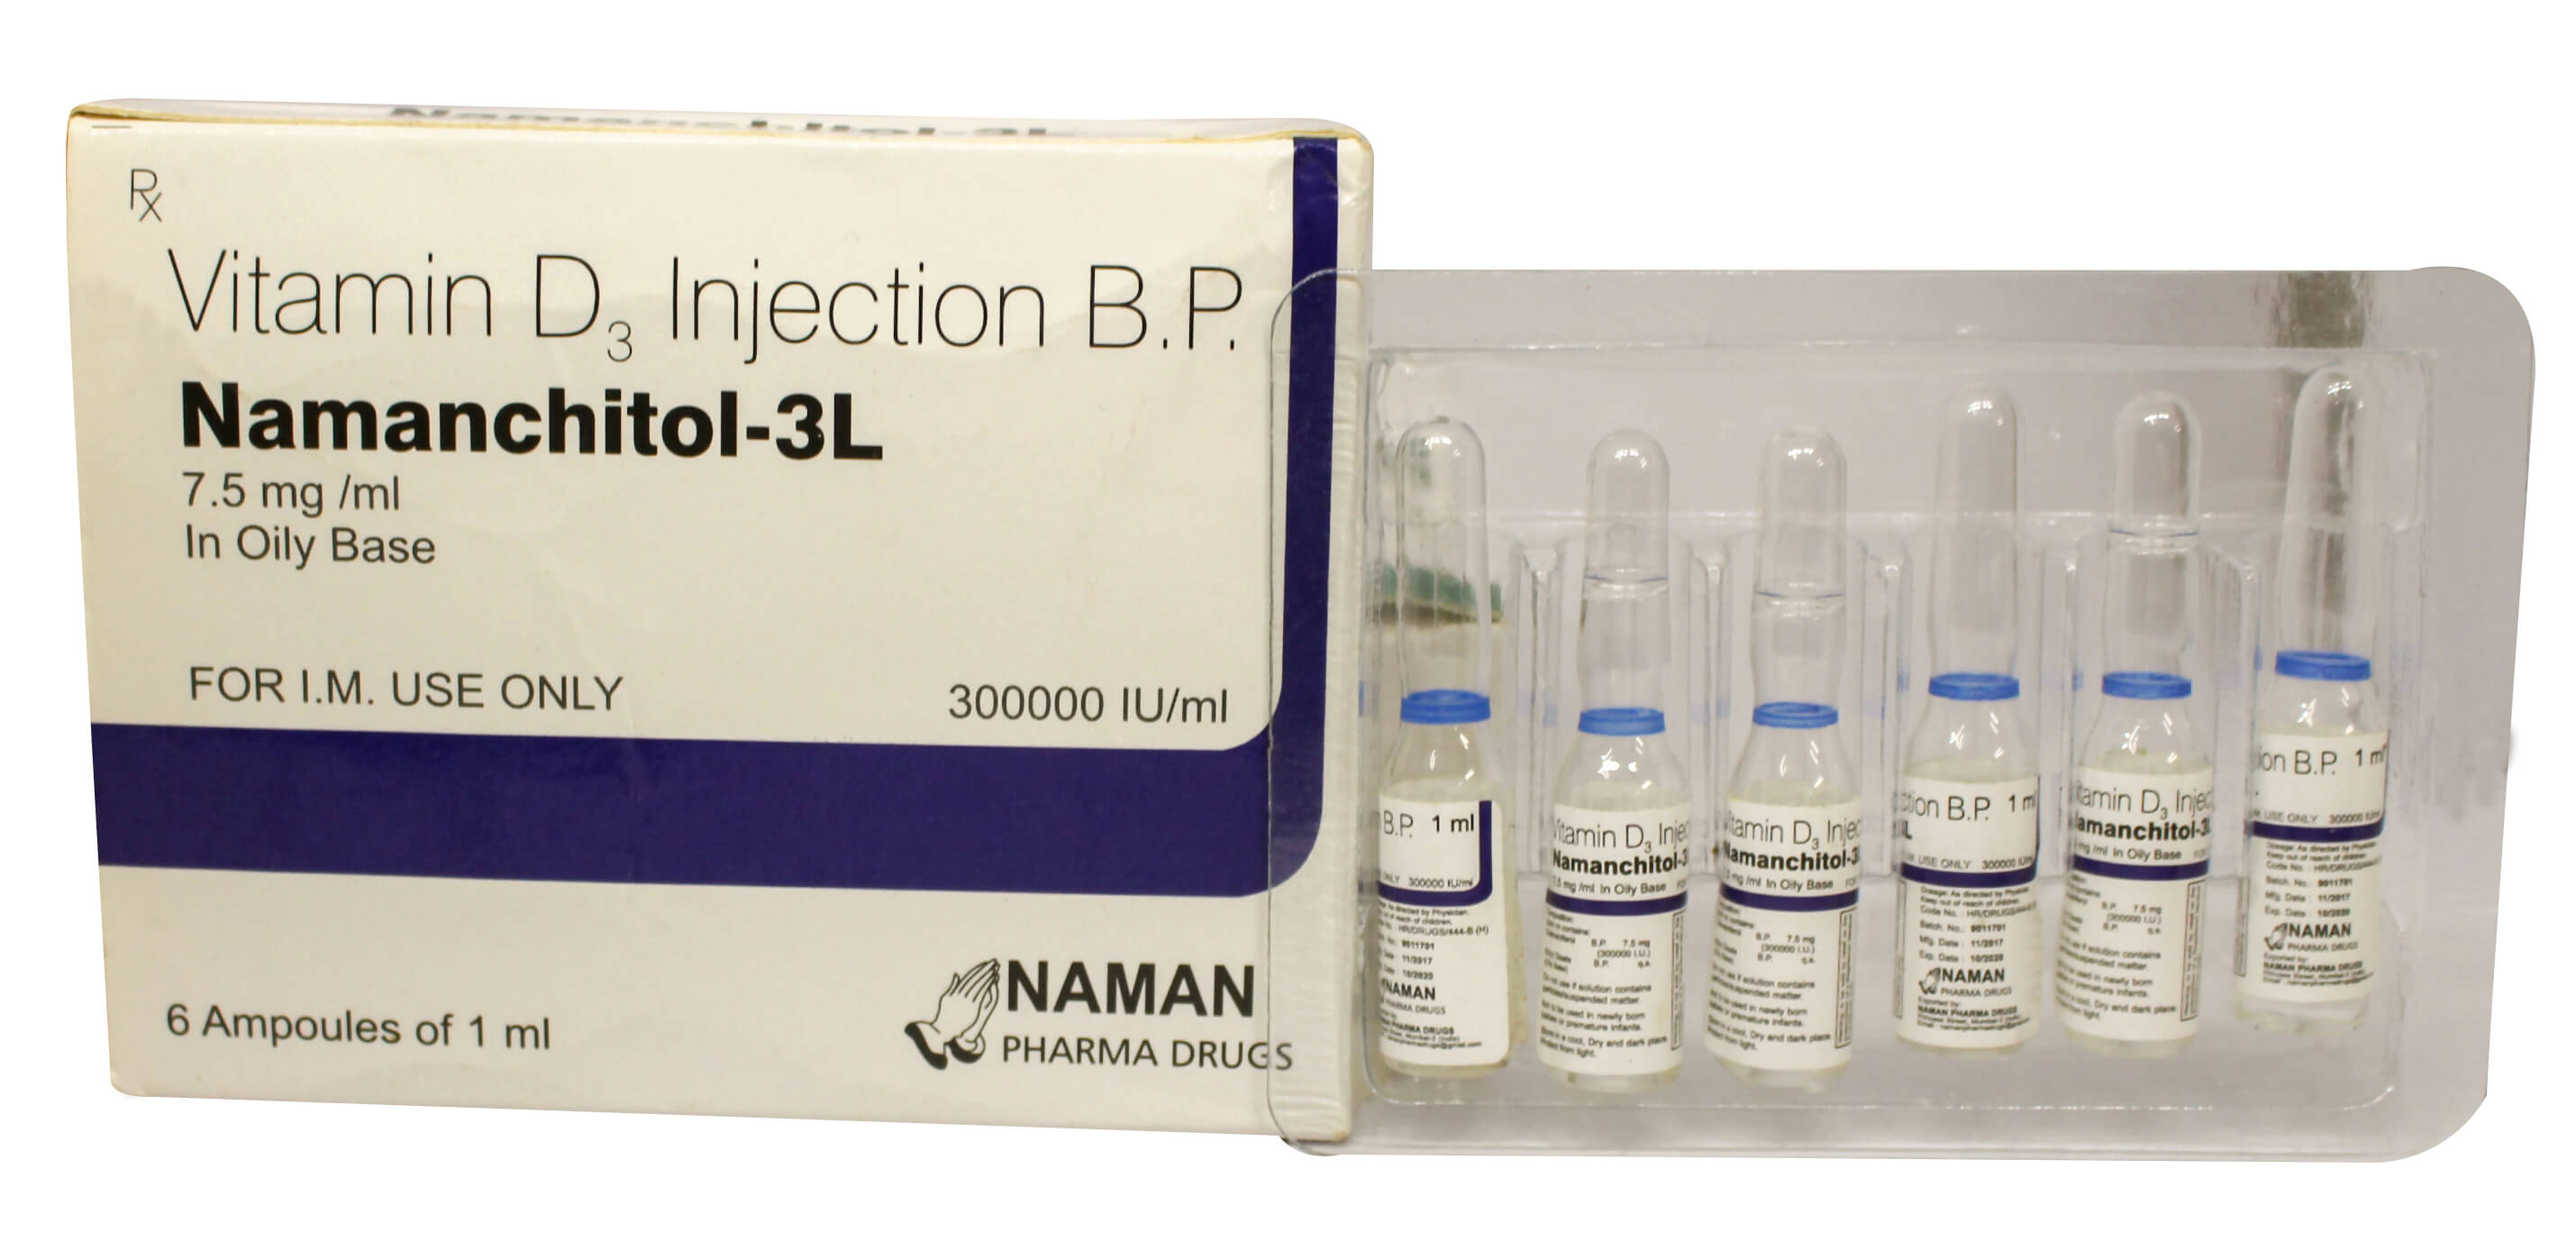 Namanchitol-3l-injection